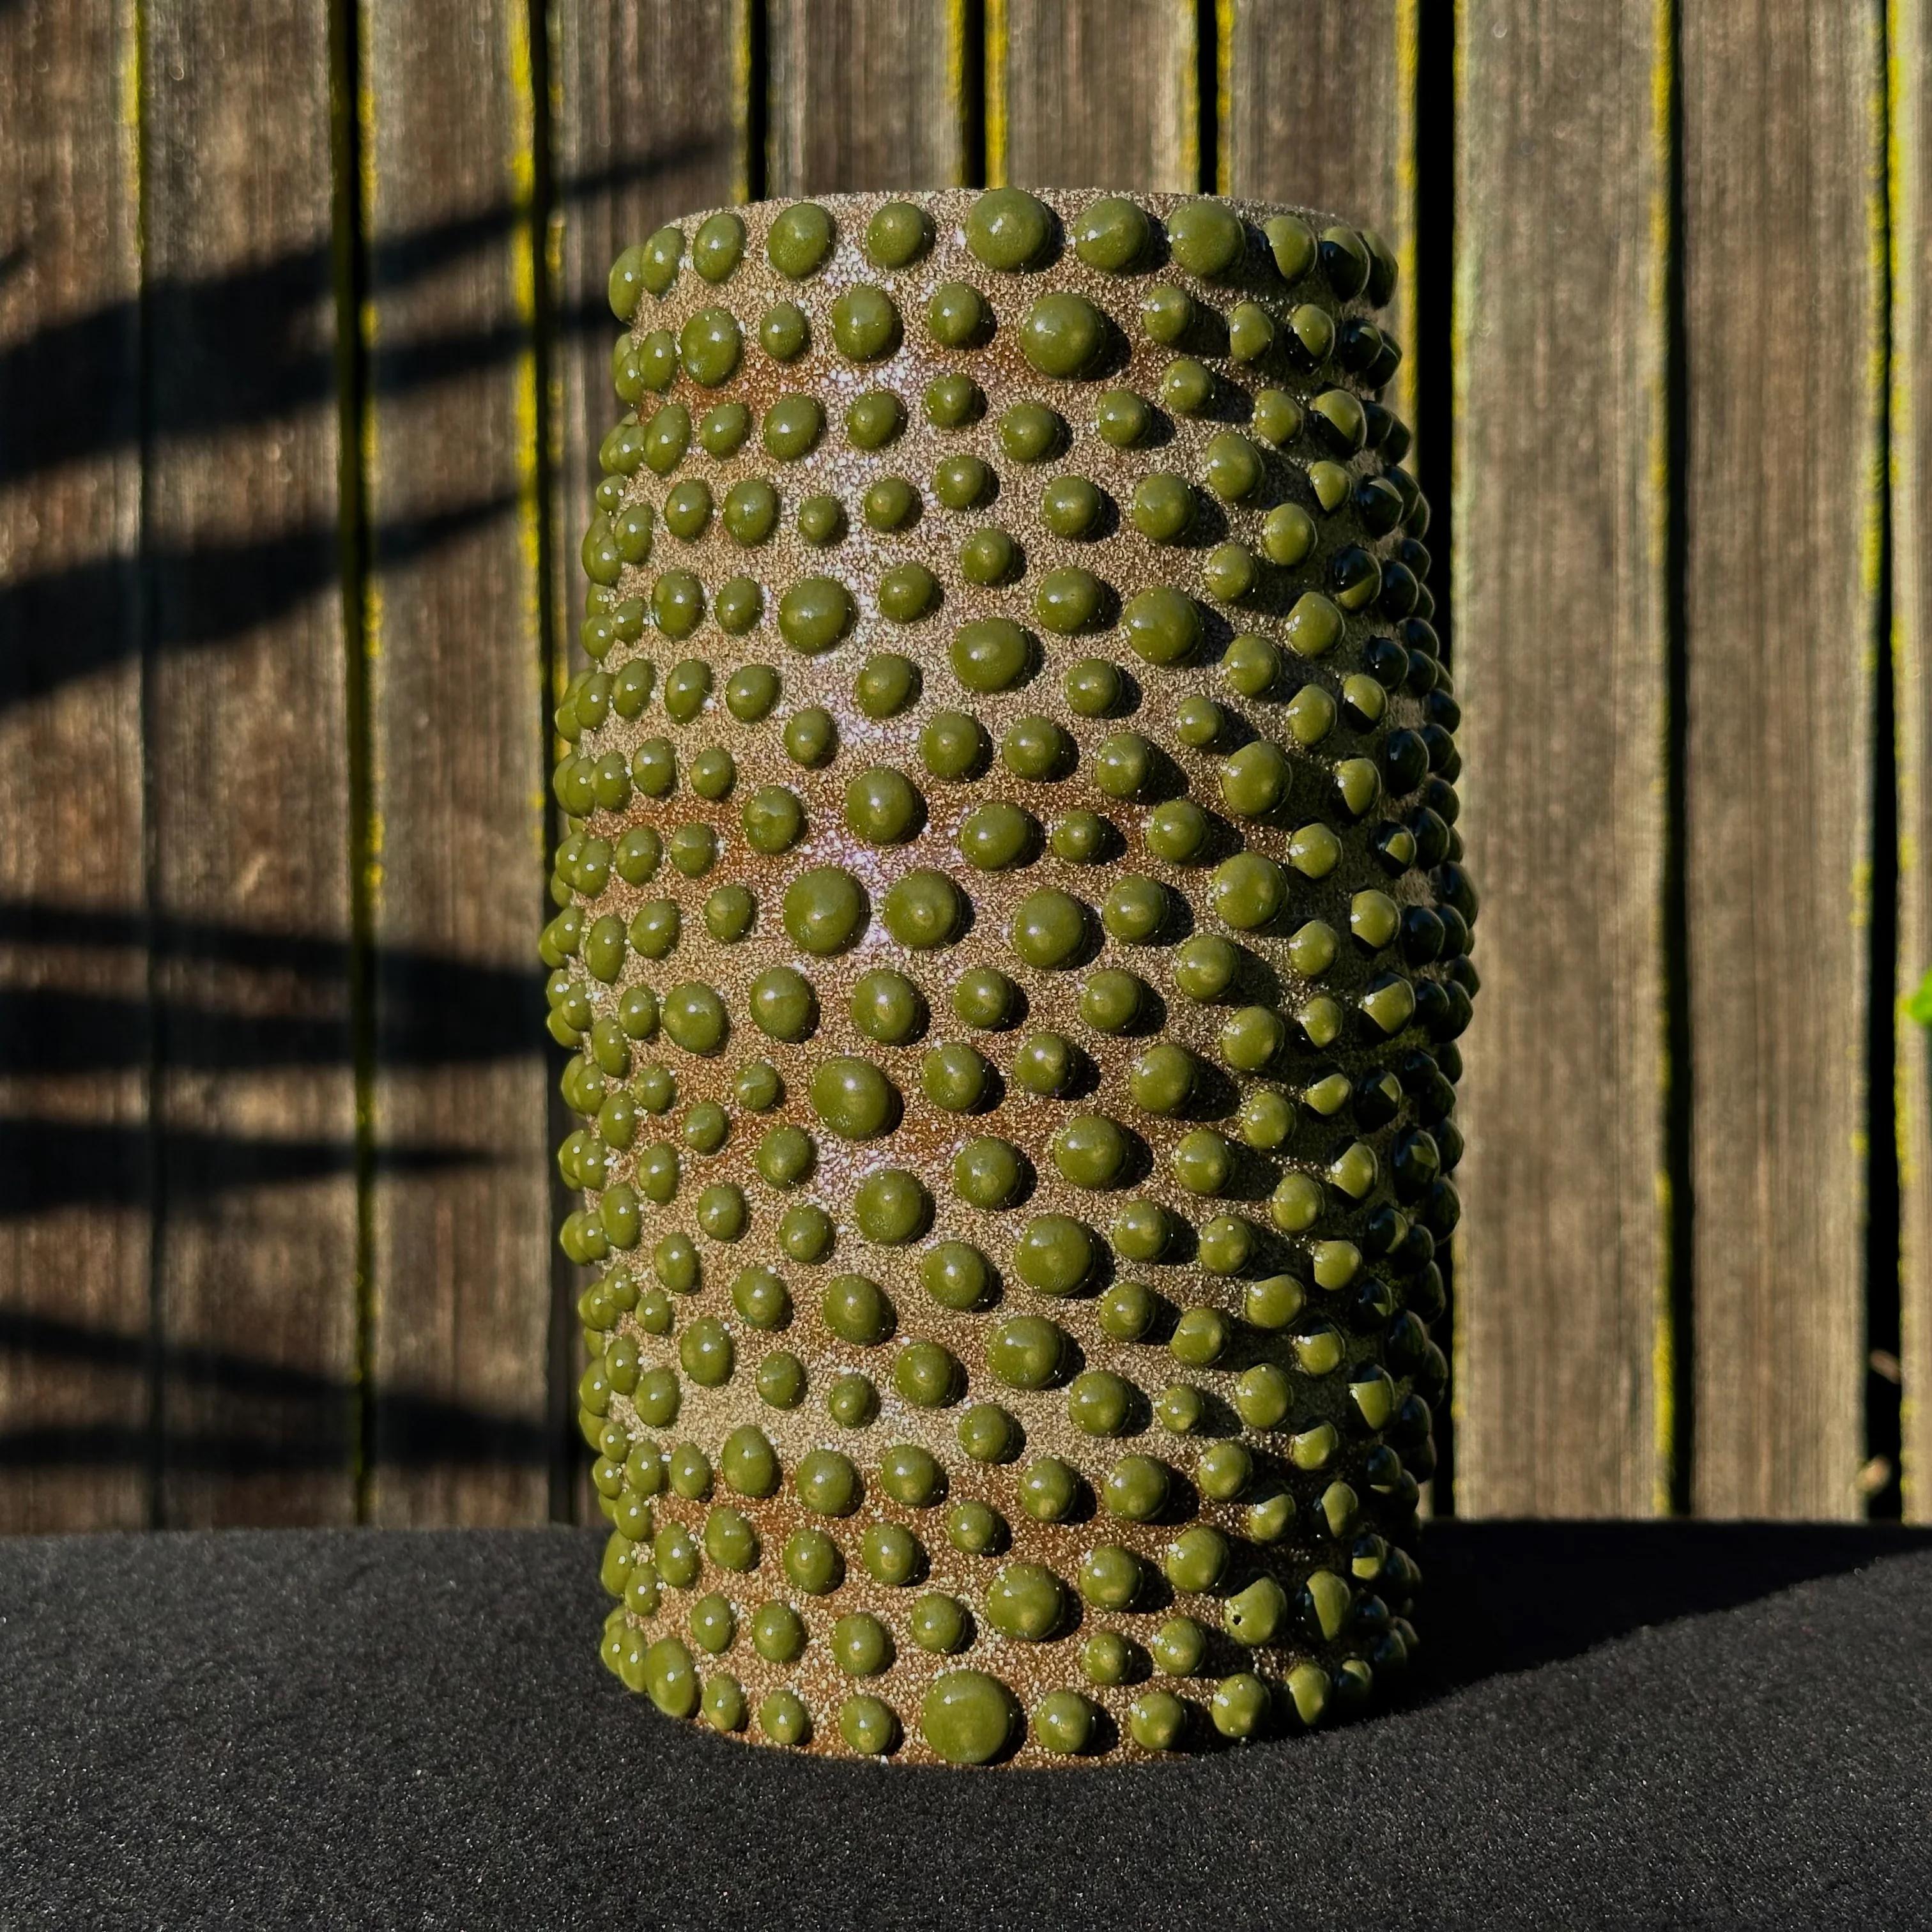 Die vom Künstler Justin Kiene aus Oakland entworfenen und hergestellten organischen Pflanzgefäße und Vasen sind von den Formen der natürlichen und mikroskopischen Welt inspiriert.

Jedes Stück wird von Hand gedreht und glasiert, was es in Ton, Form